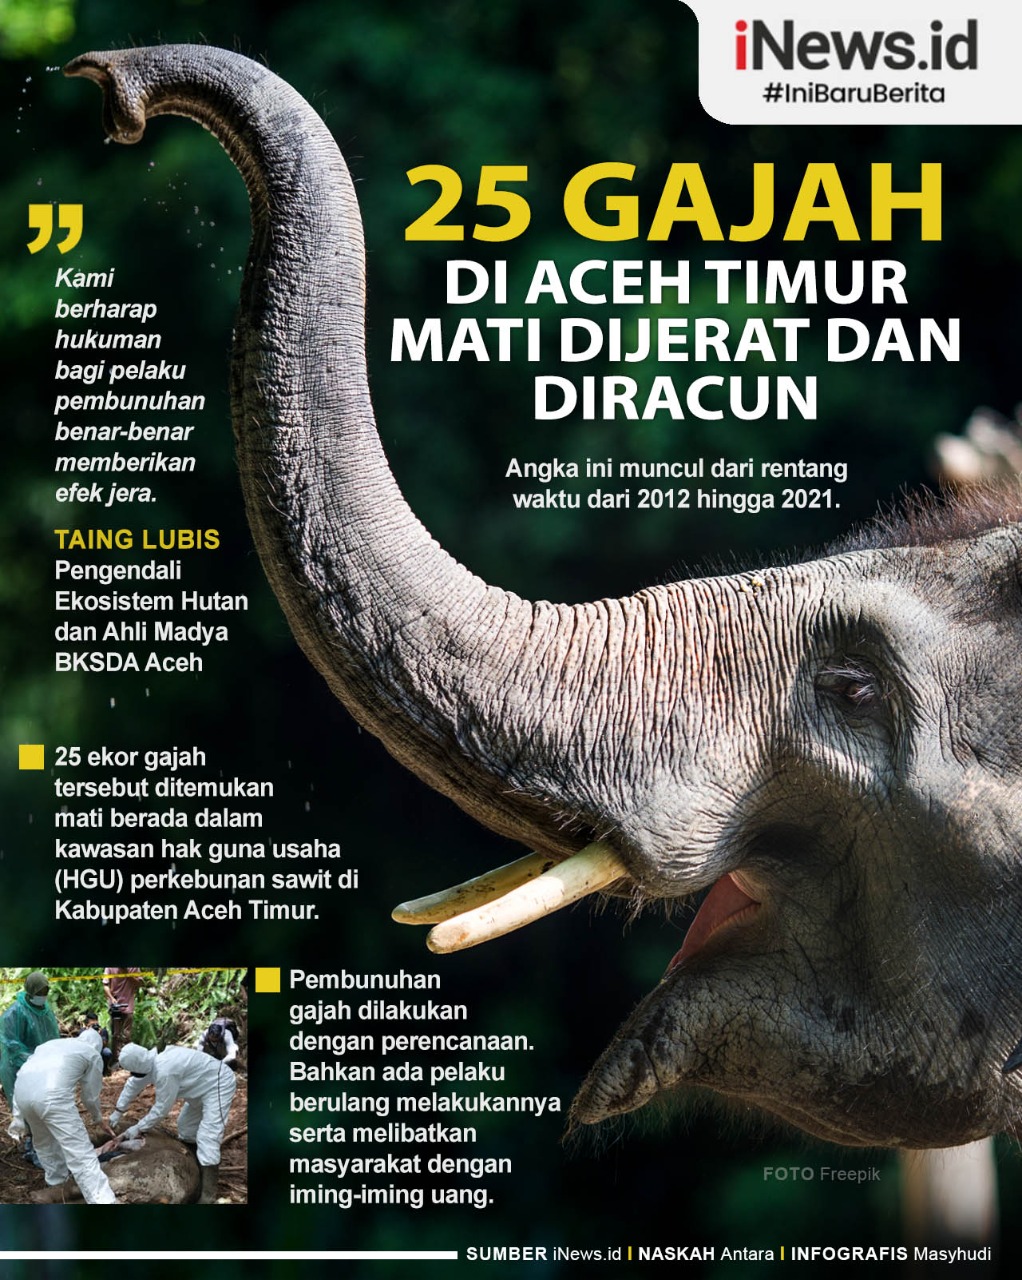 Infografis 25 gajah di Aceh Timur Mati karena dijerat dan diracun (Infografis: Masyhudi)